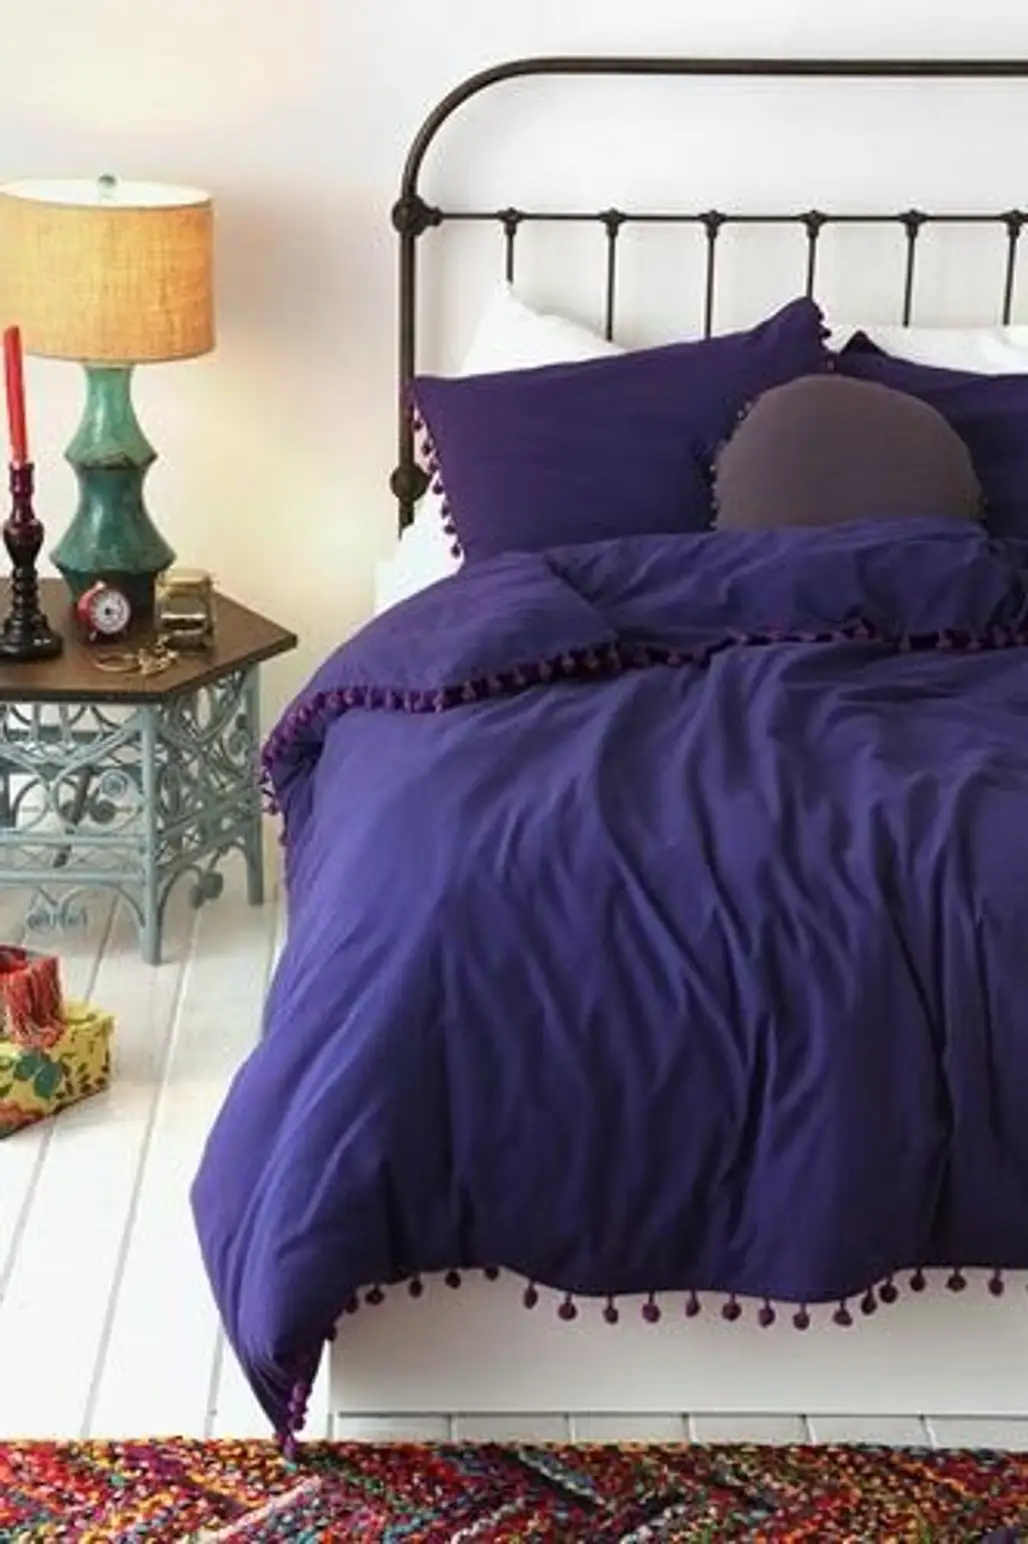 duvet cover,bed sheet,room,textile,bed,